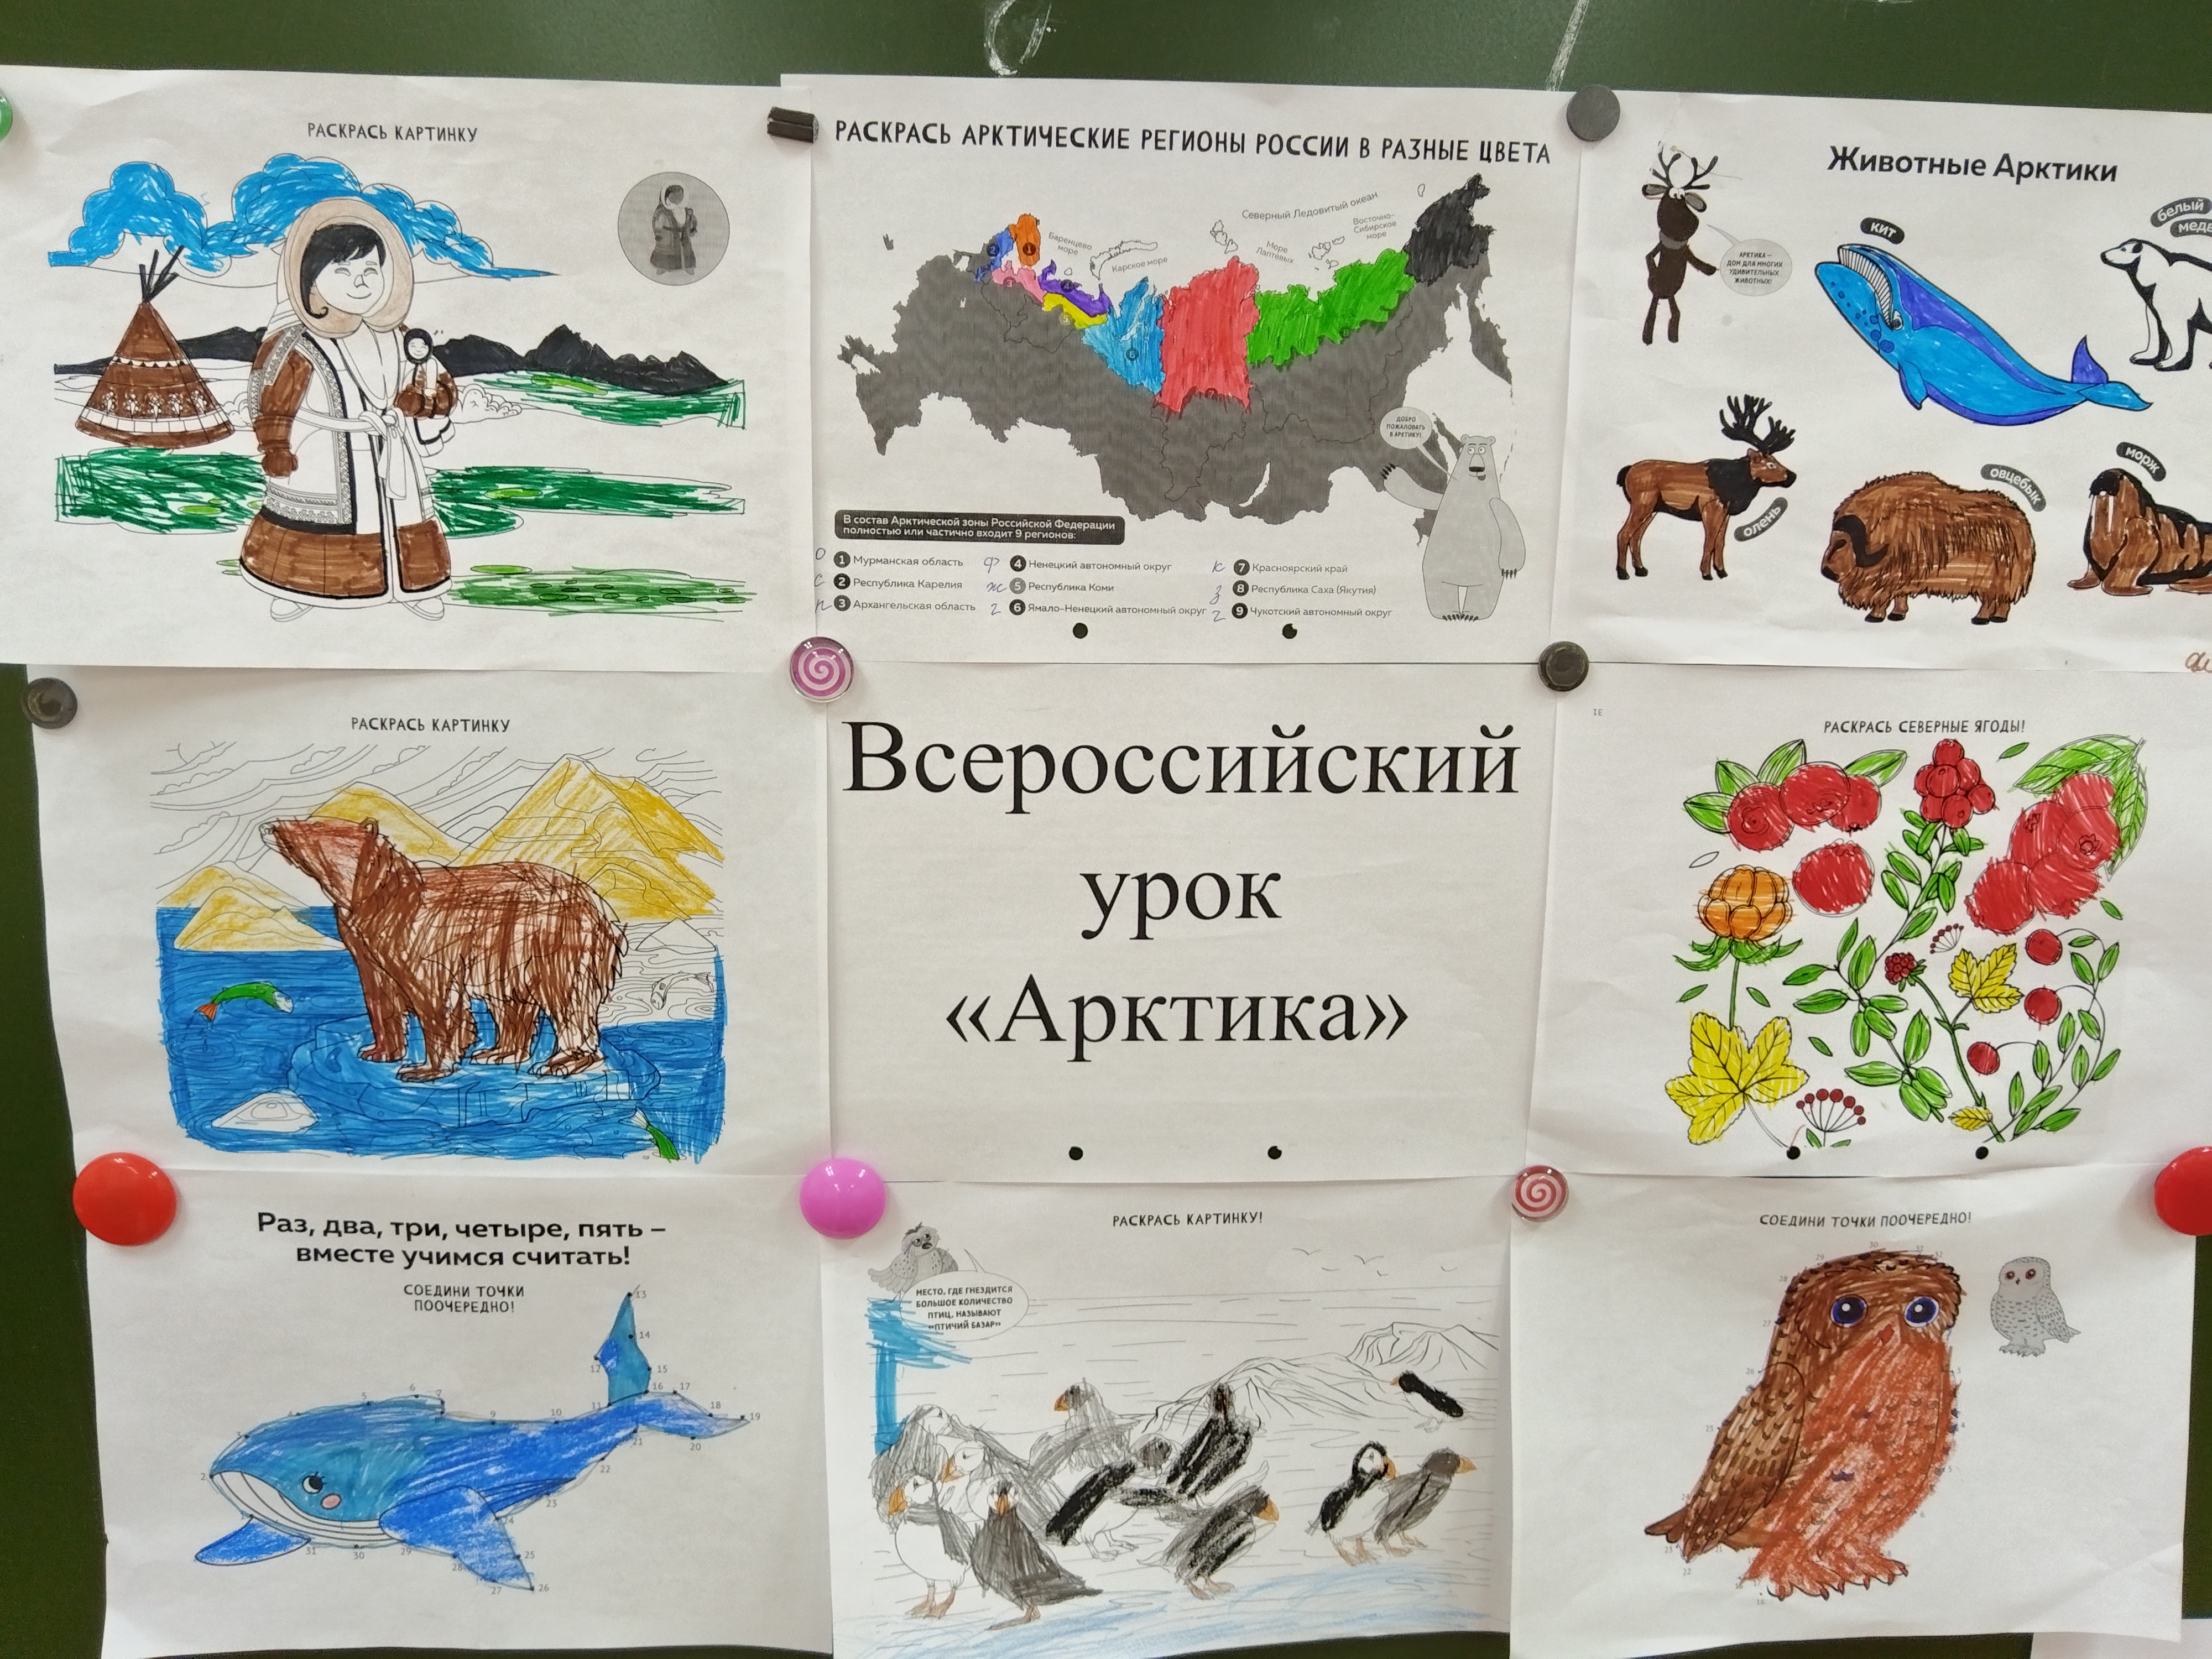 Всероссийский урок «Арктика».